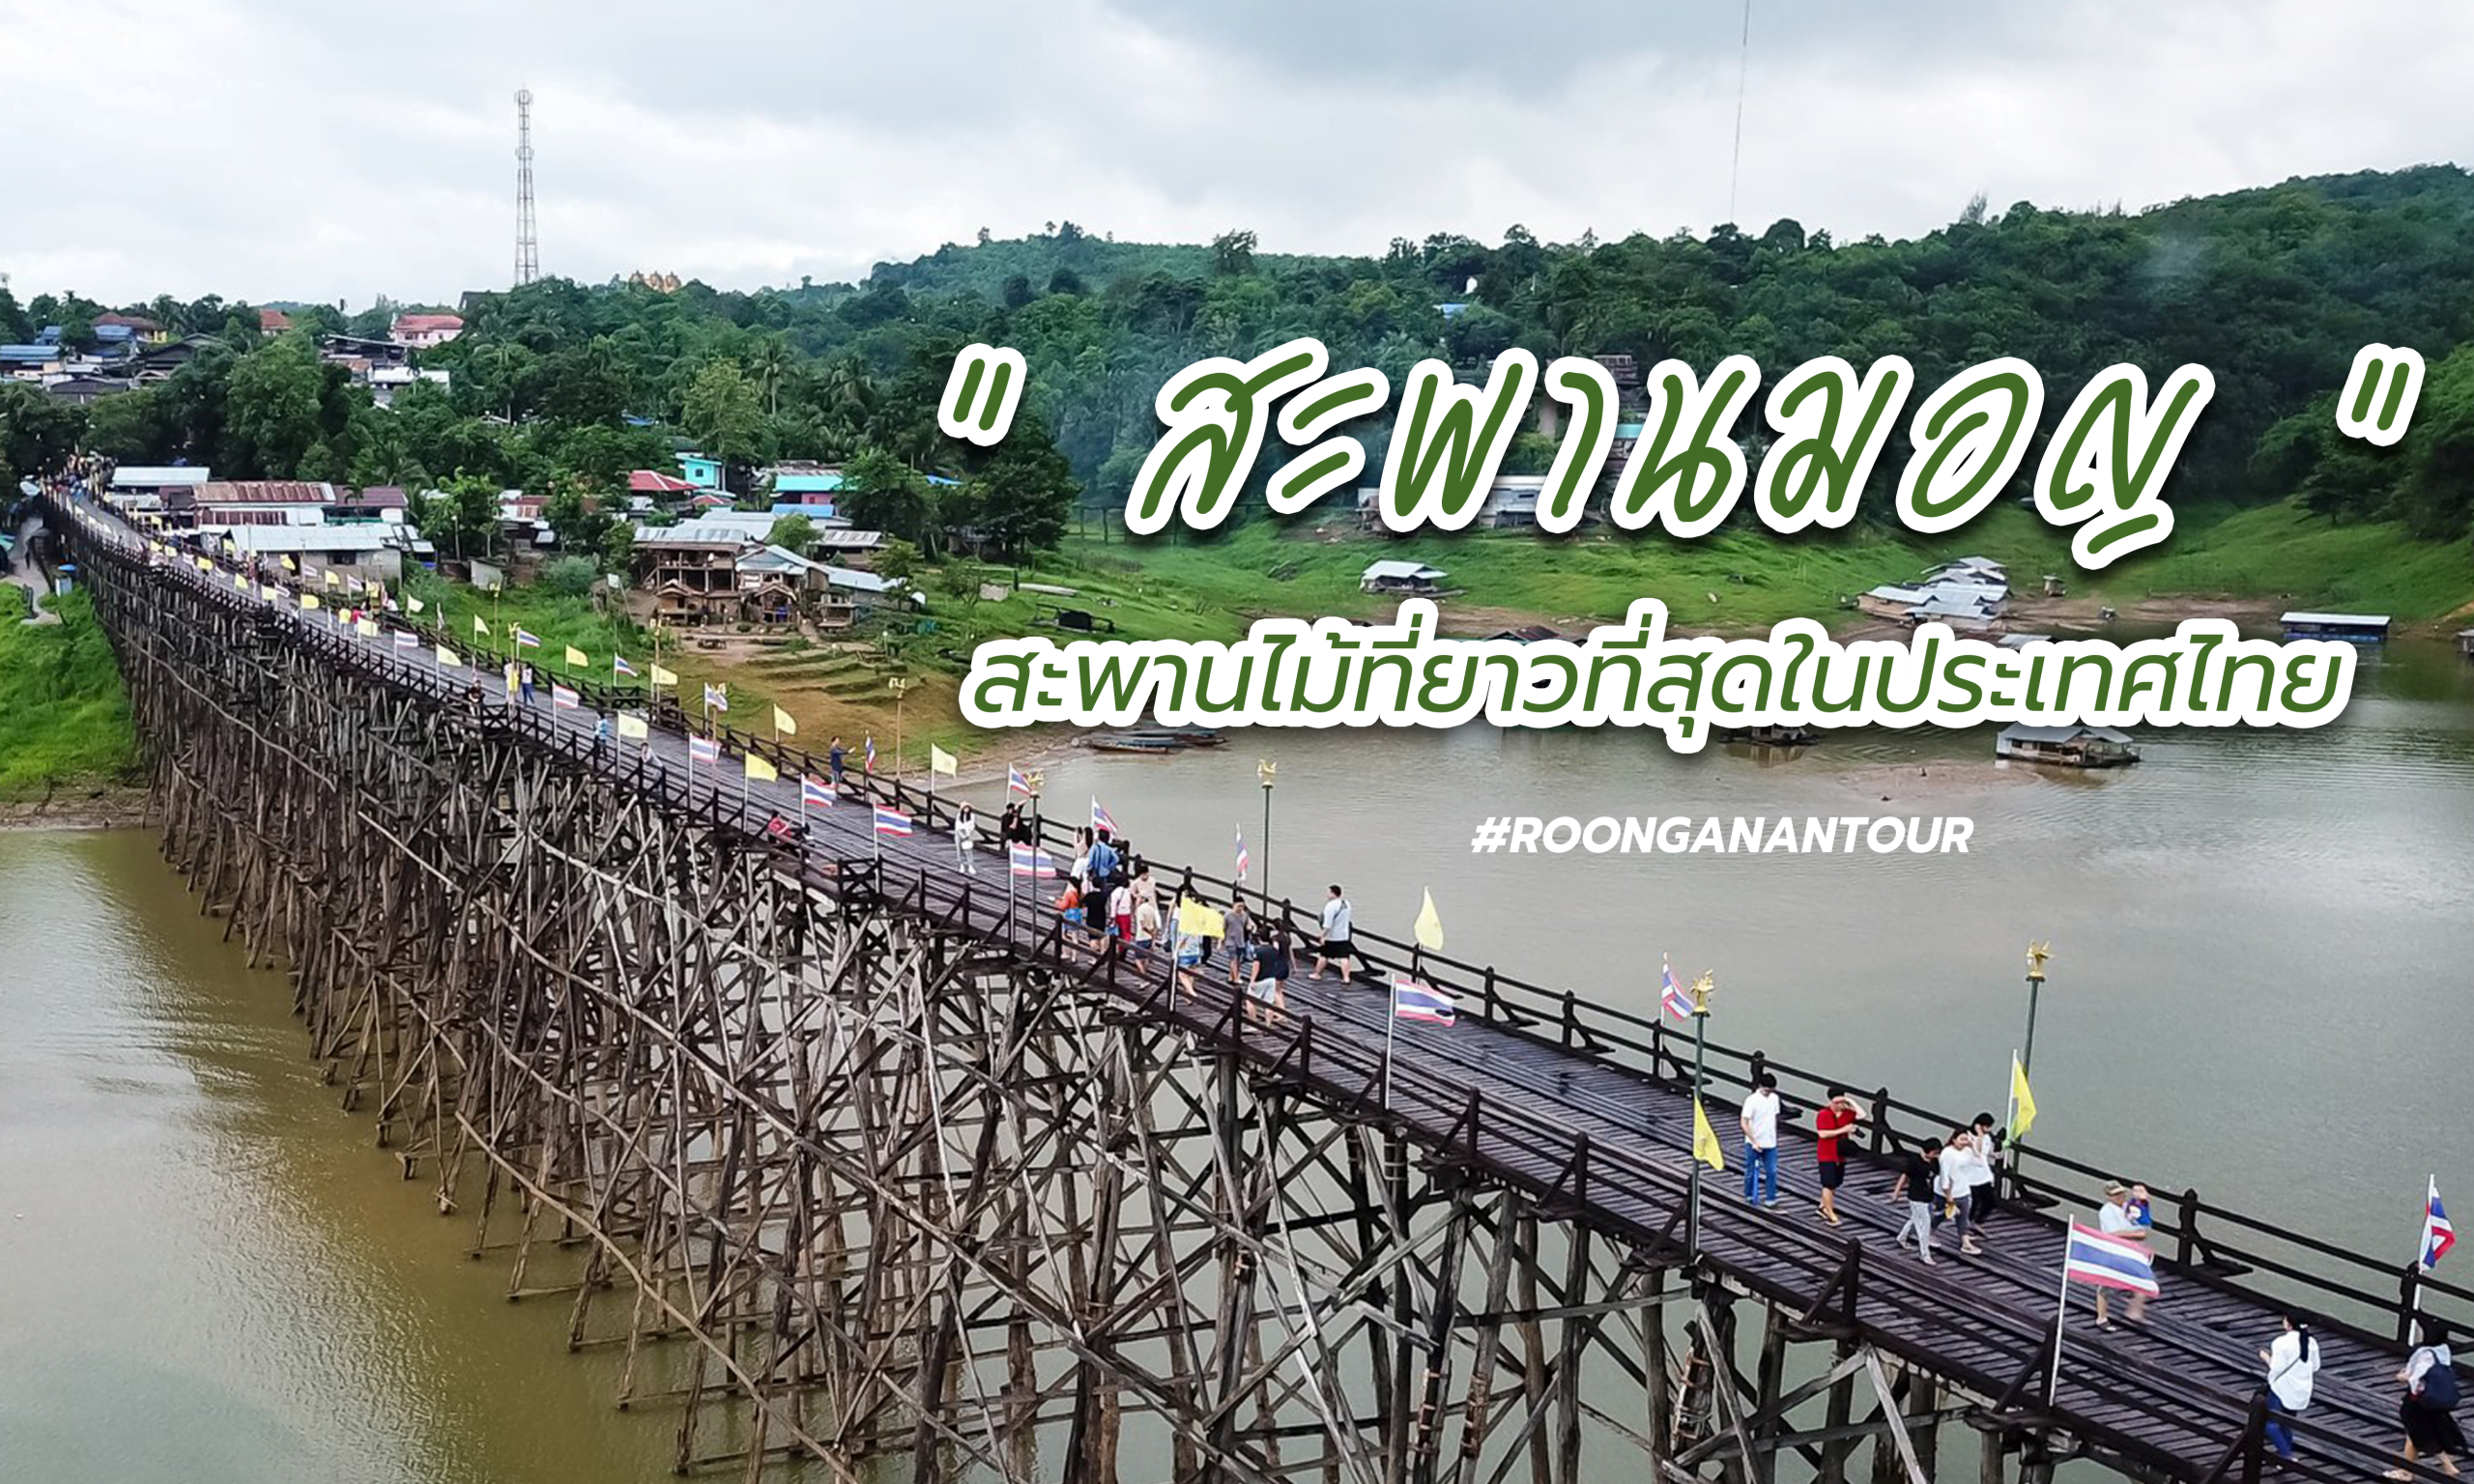 เที่ยวสะพานมอญ สะพานไม้ที่ยาวที่สุดในประเทศไทย